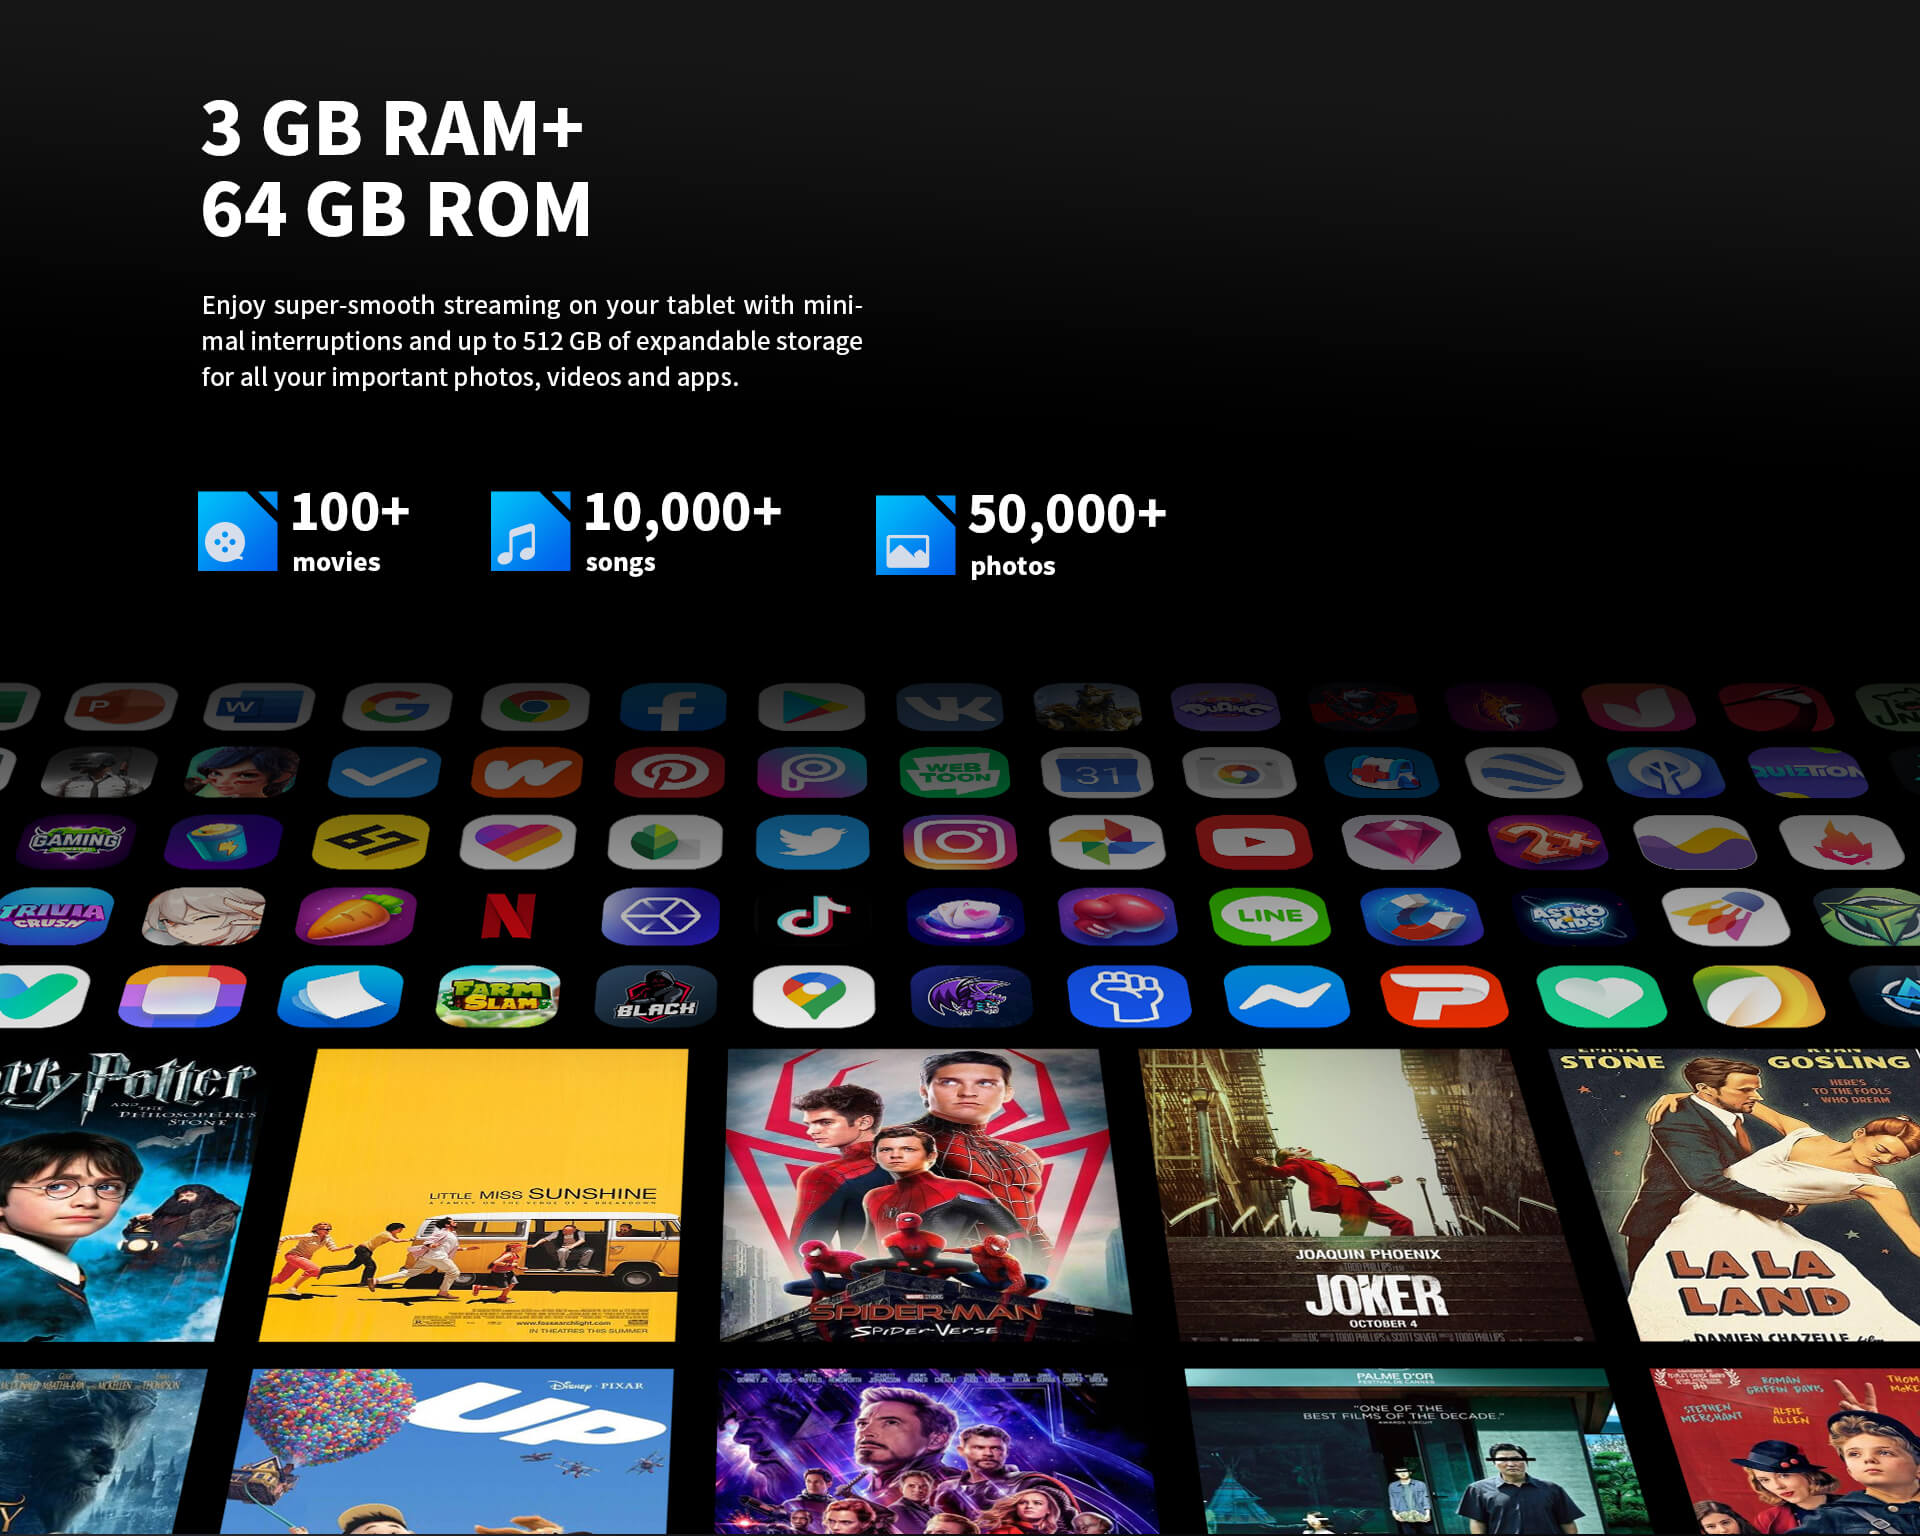 3GB 羊 + 64GB ROM